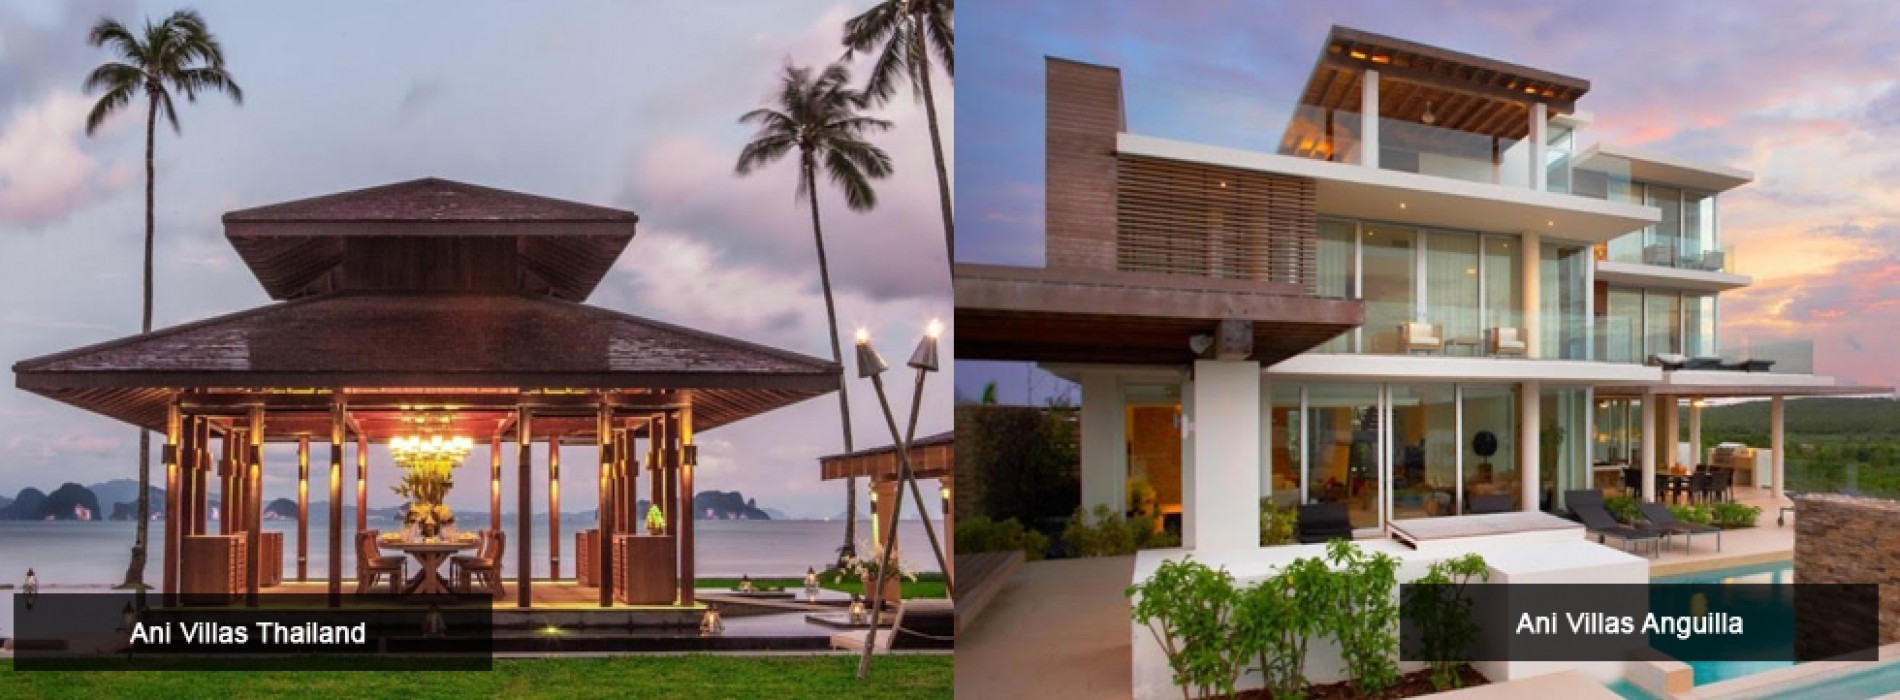 Ani Villas to open Fourth Private Resort in Dominican Republic